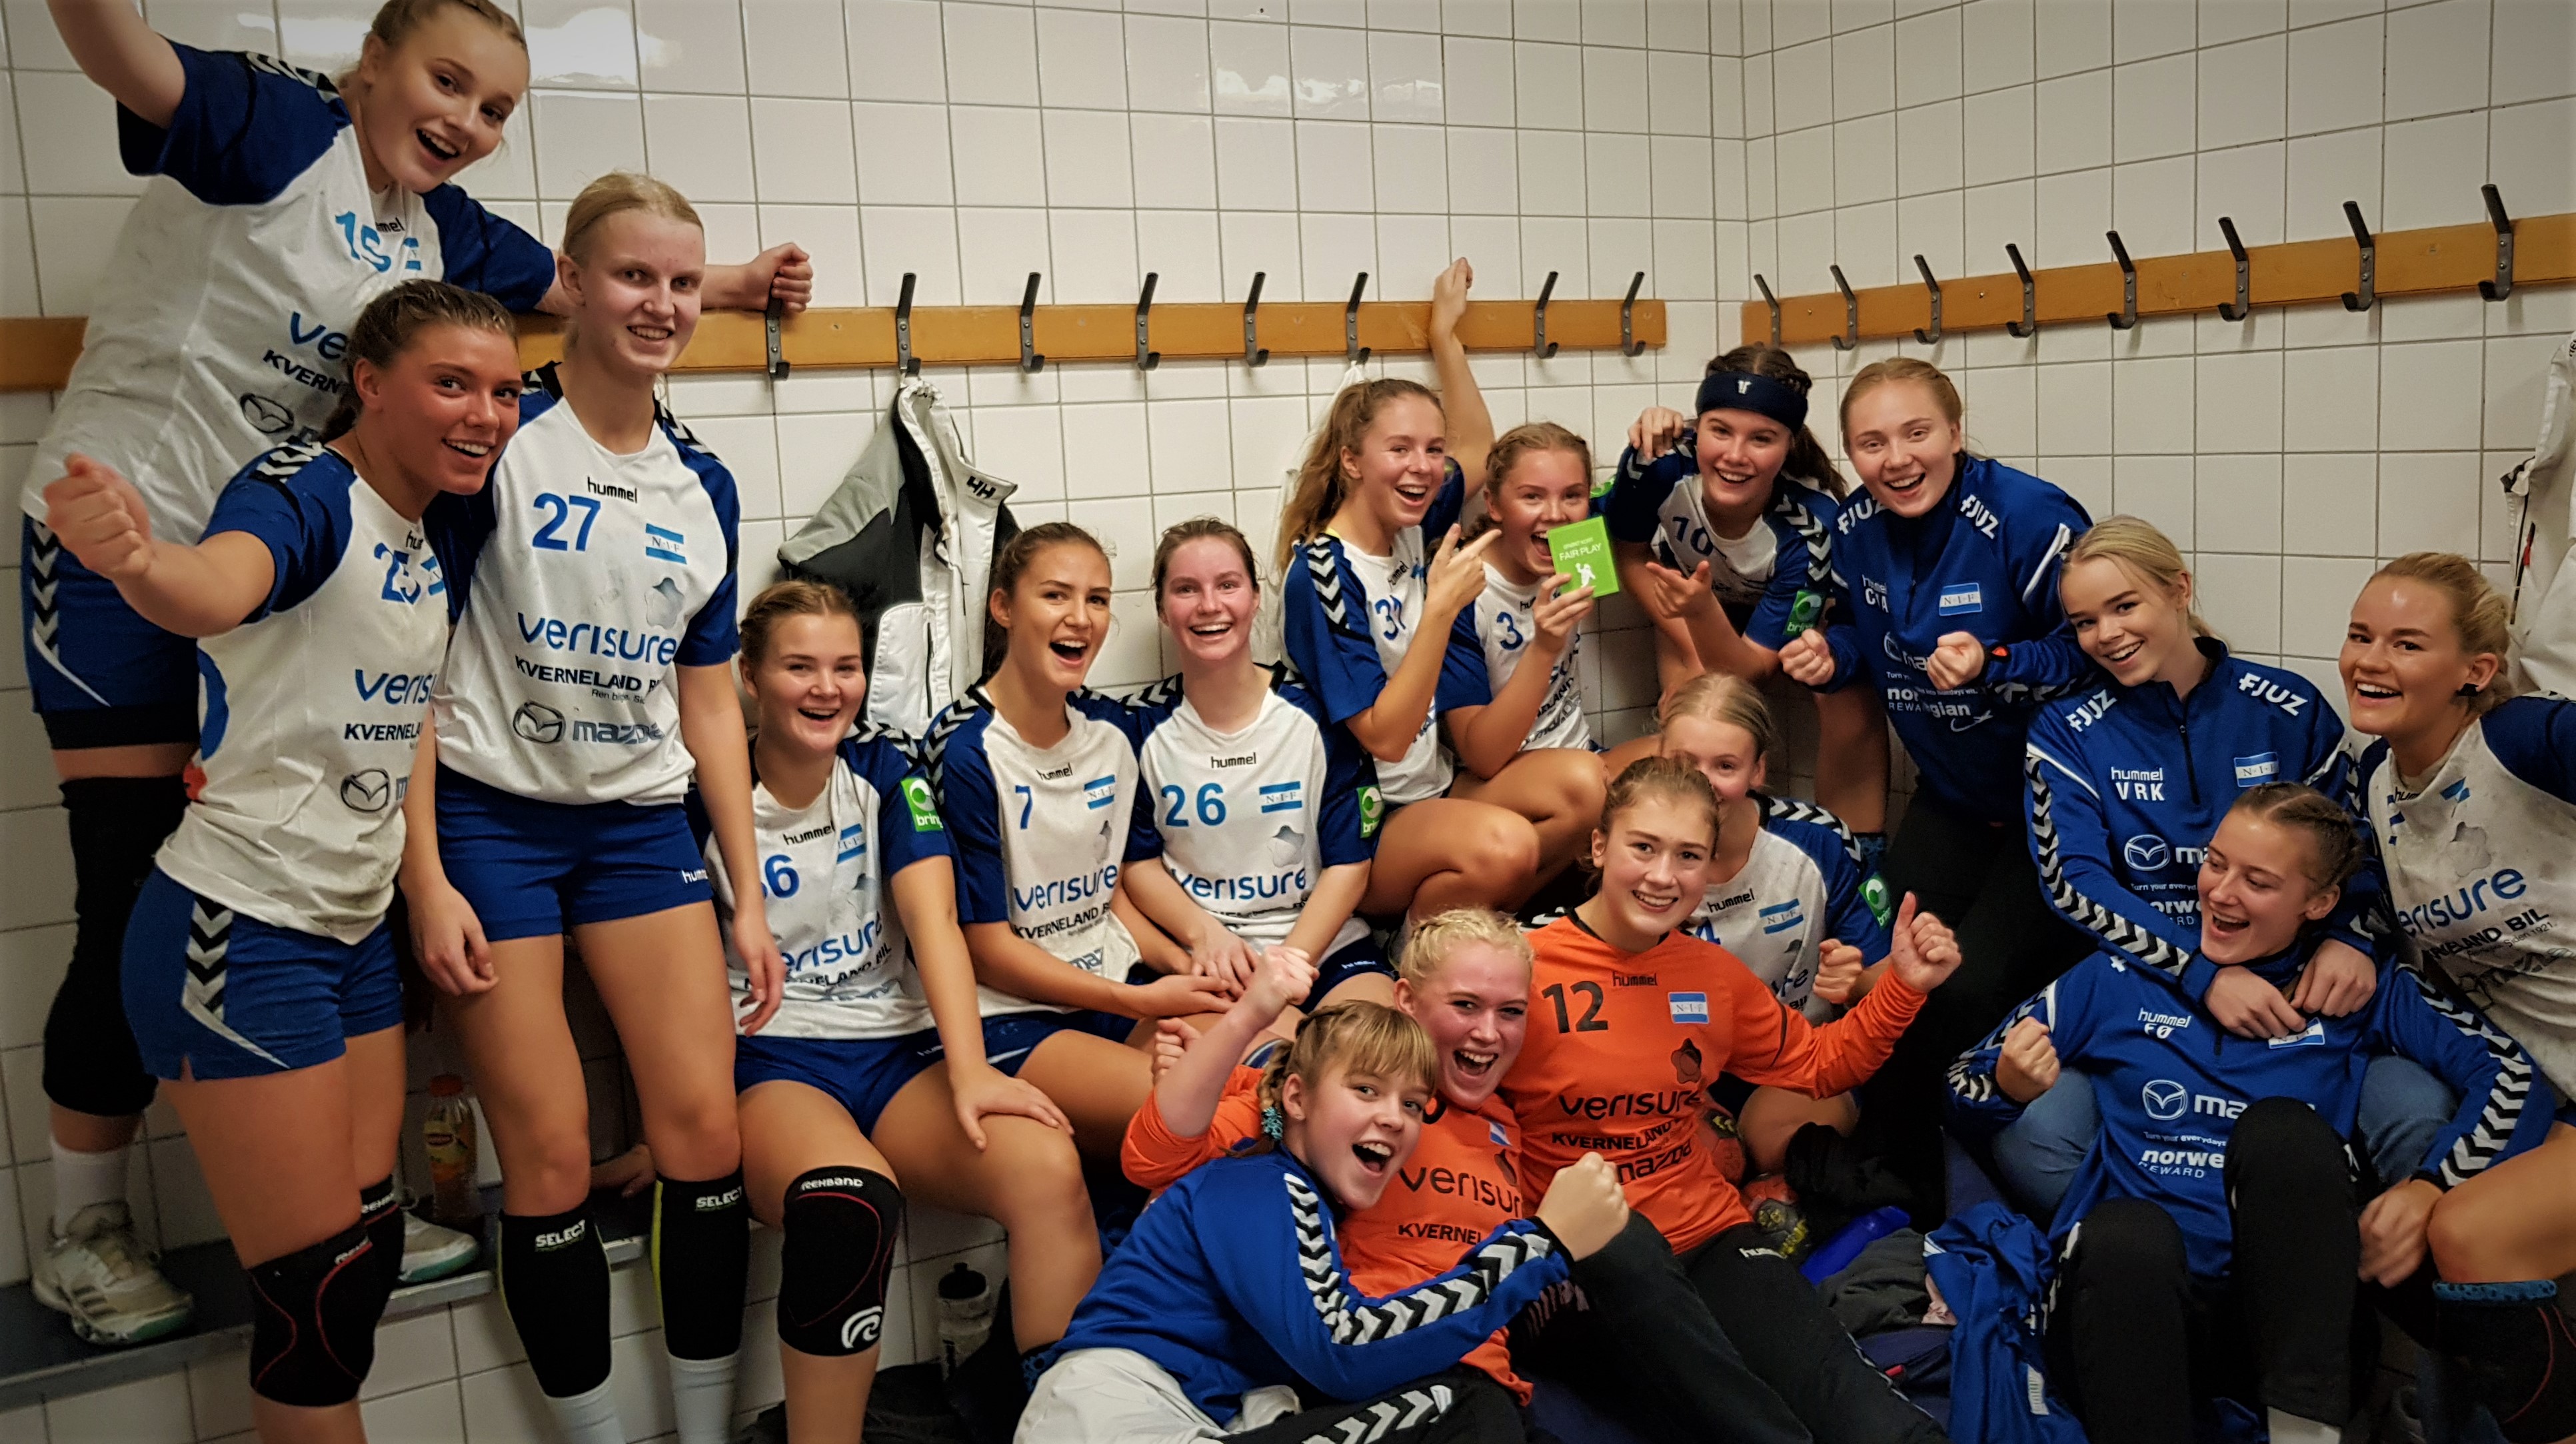 Bring runde 1 # Stavanger - Full poengpott 